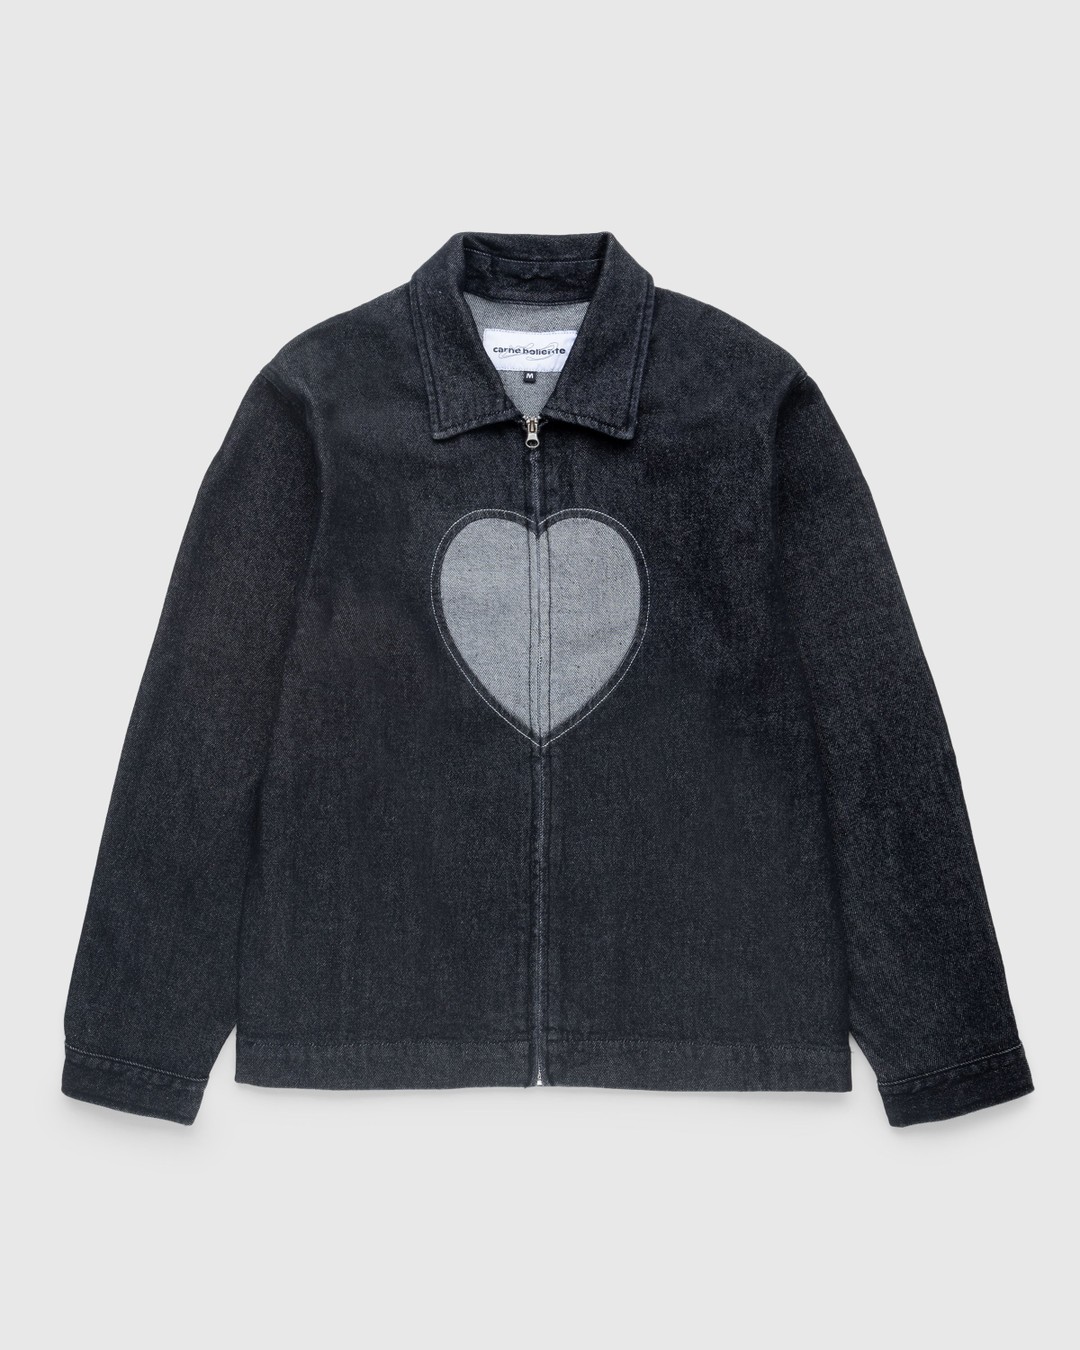 Carne Bollente – Heart Slice Jacket Washed Black - Outerwear - Black - Image 1